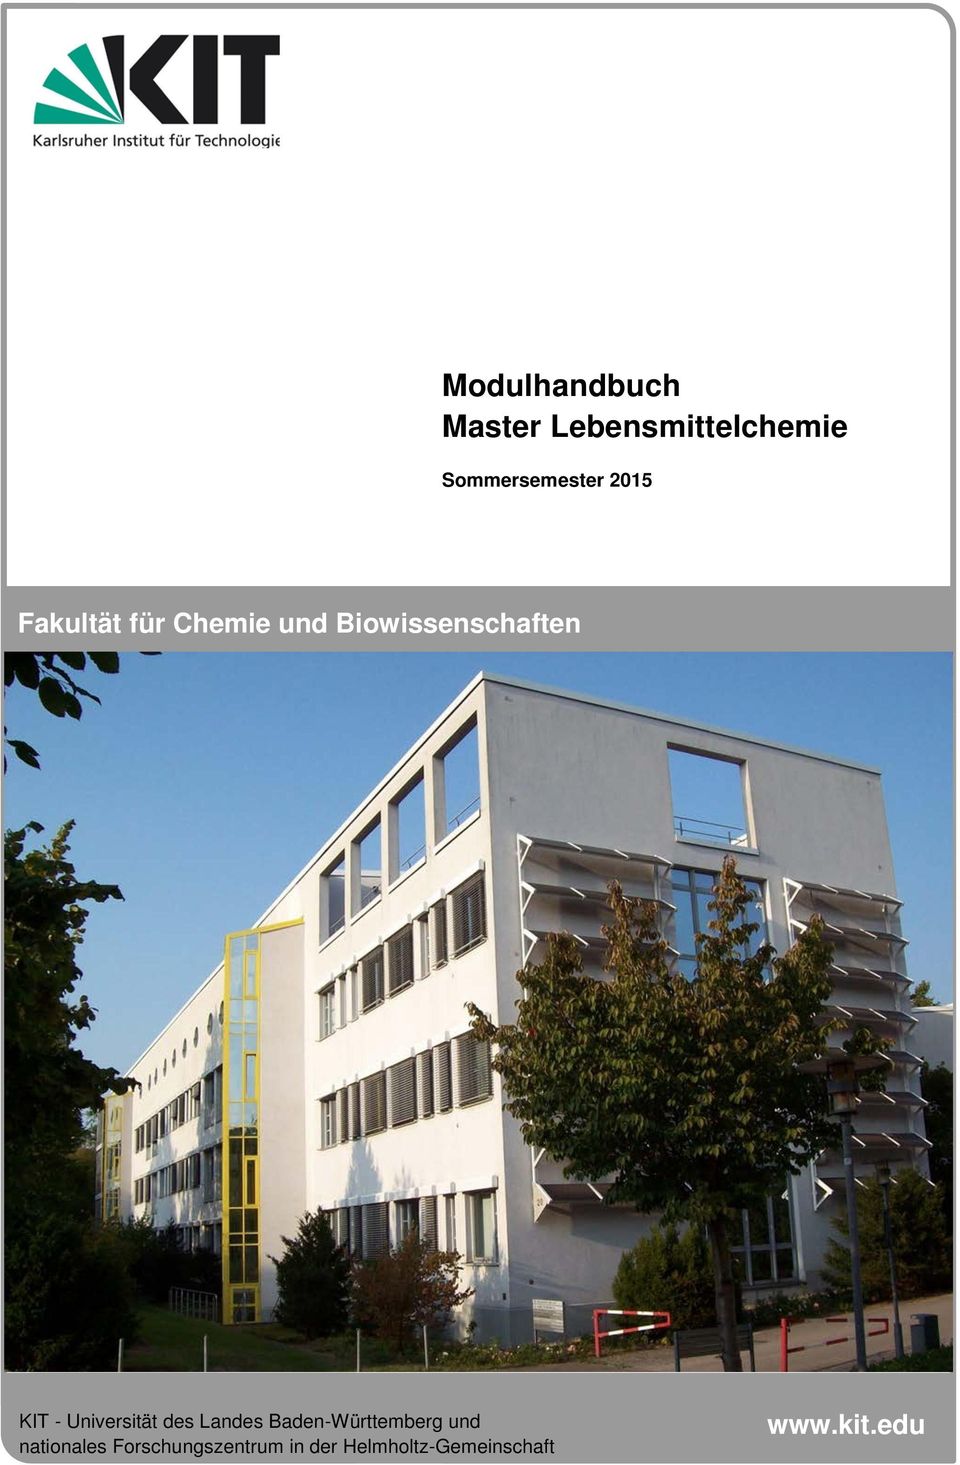 Universität des Landes Baden-Württemberg und nationales